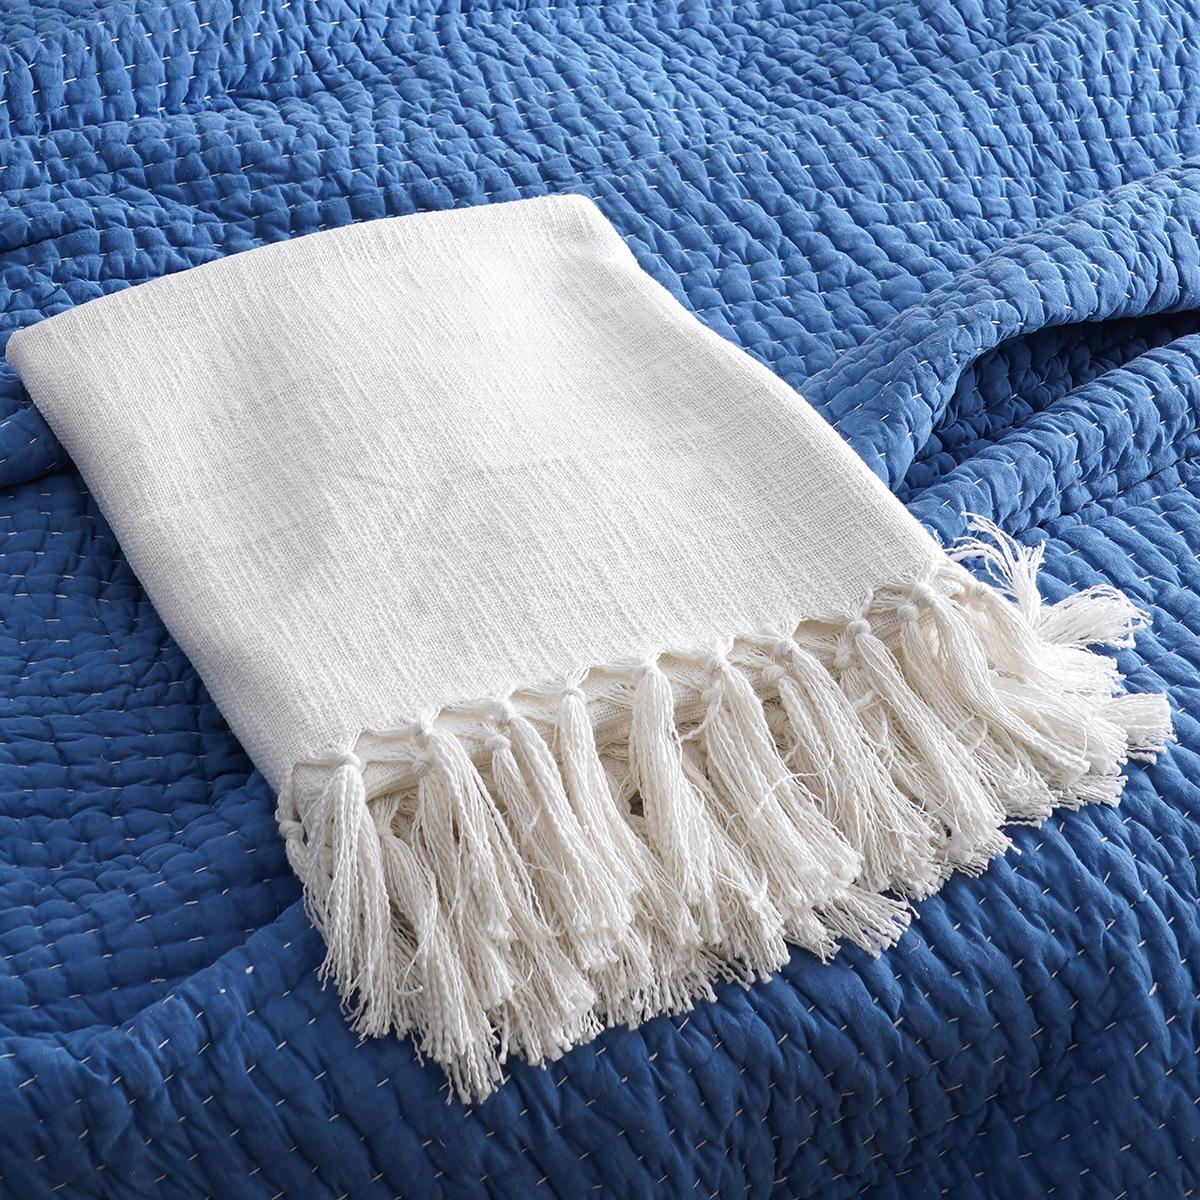 White Slub Cotton Throw blanket, 100% cotton, 50X60 inches with fringes